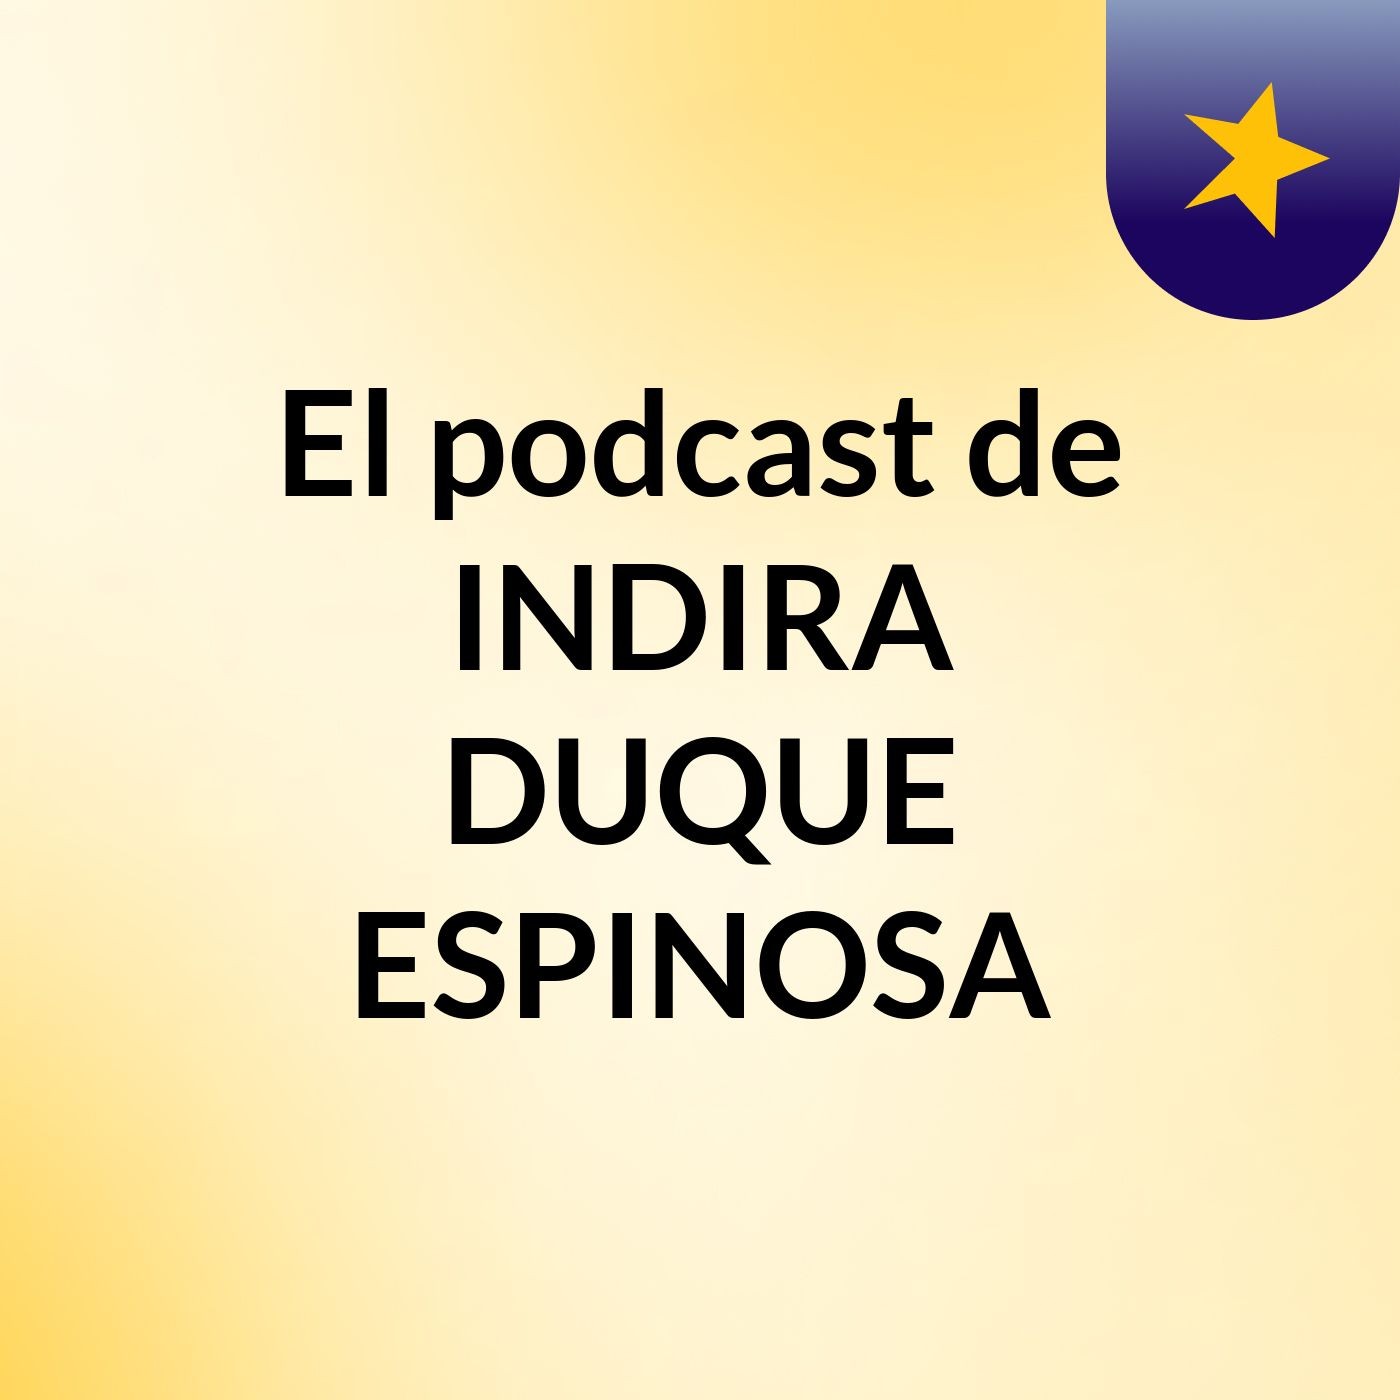 Episodio 2 - El podcast de INDIRA DUQUE ESPINOSA